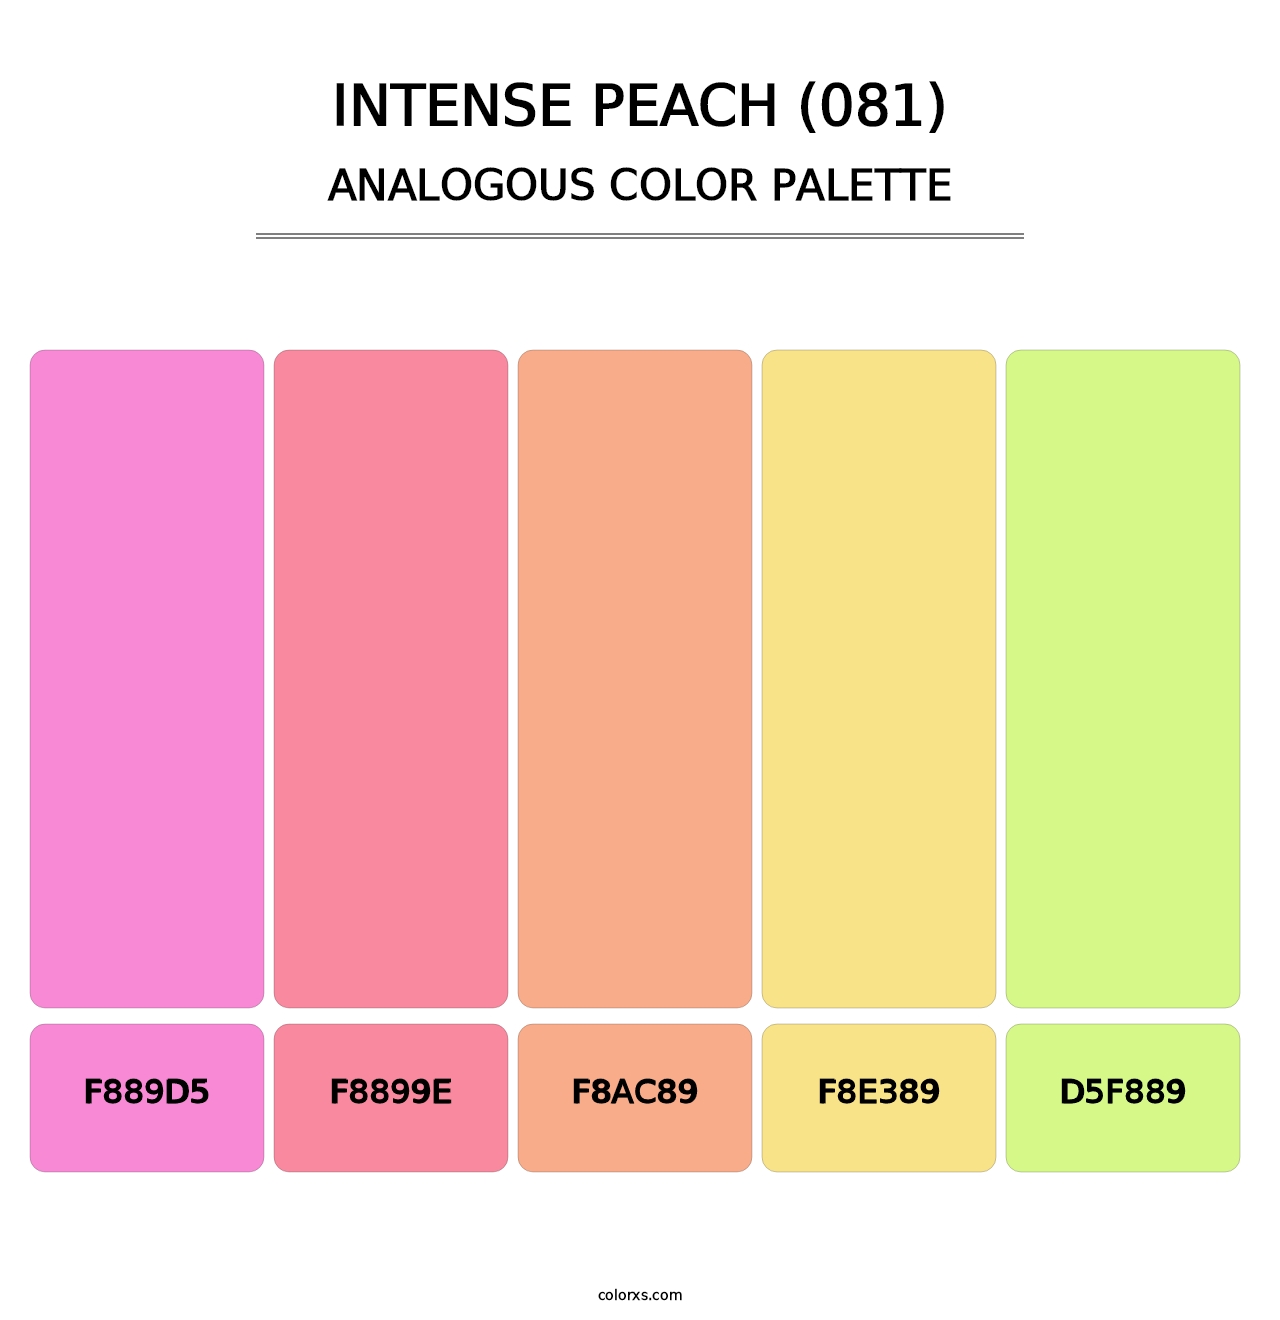 Intense Peach (081) - Analogous Color Palette